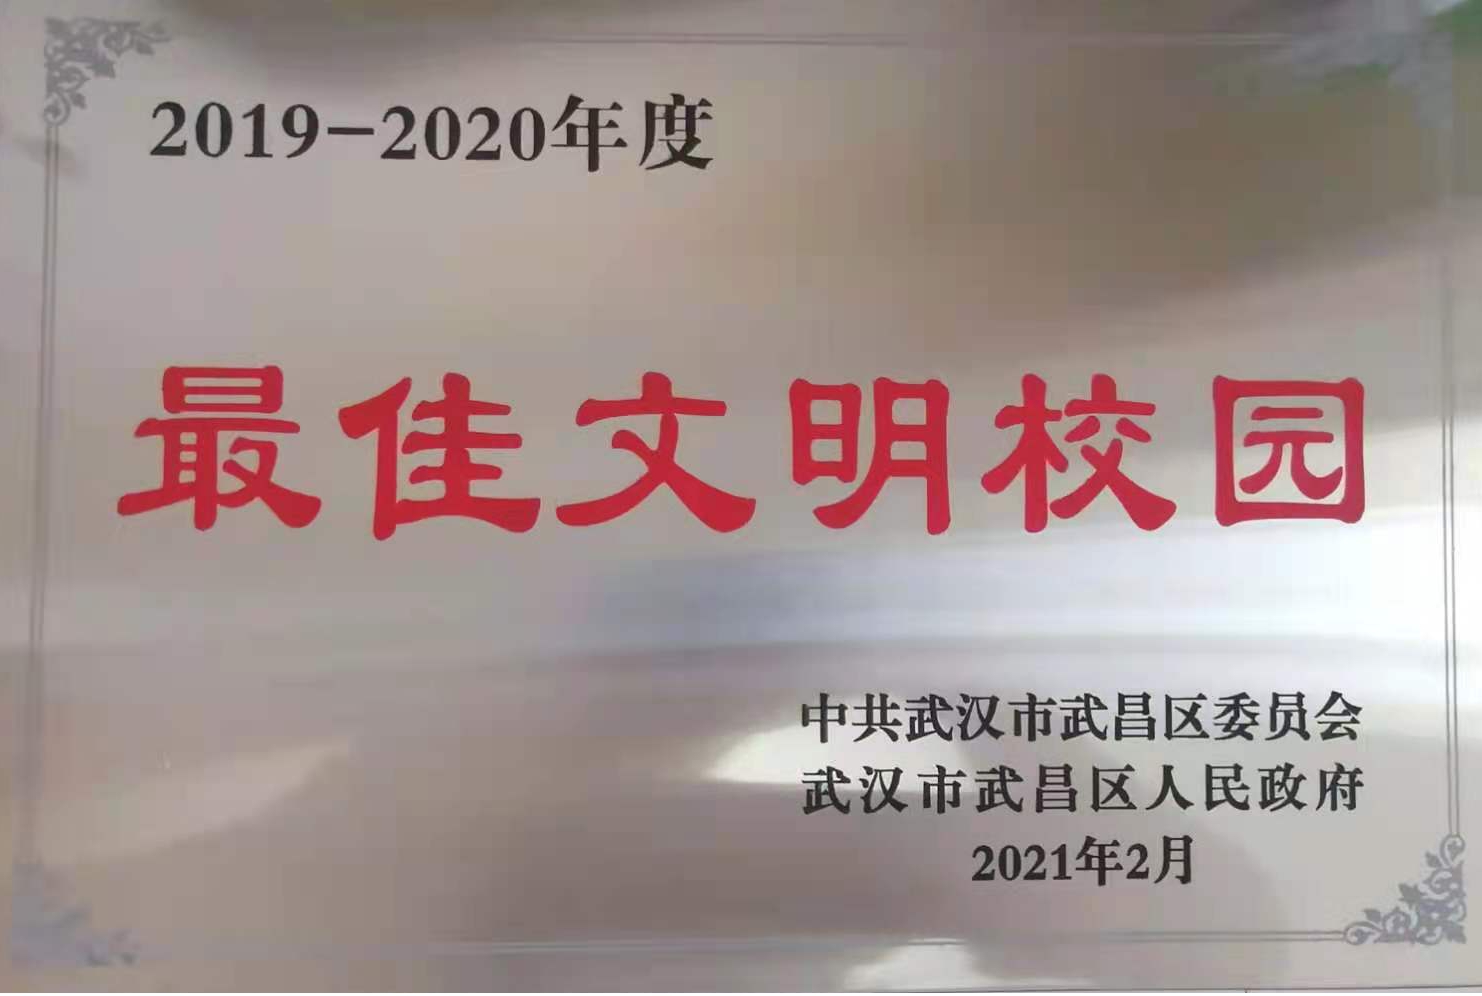 我院荣获2019-2020年度武昌区“最佳文明校园”称号